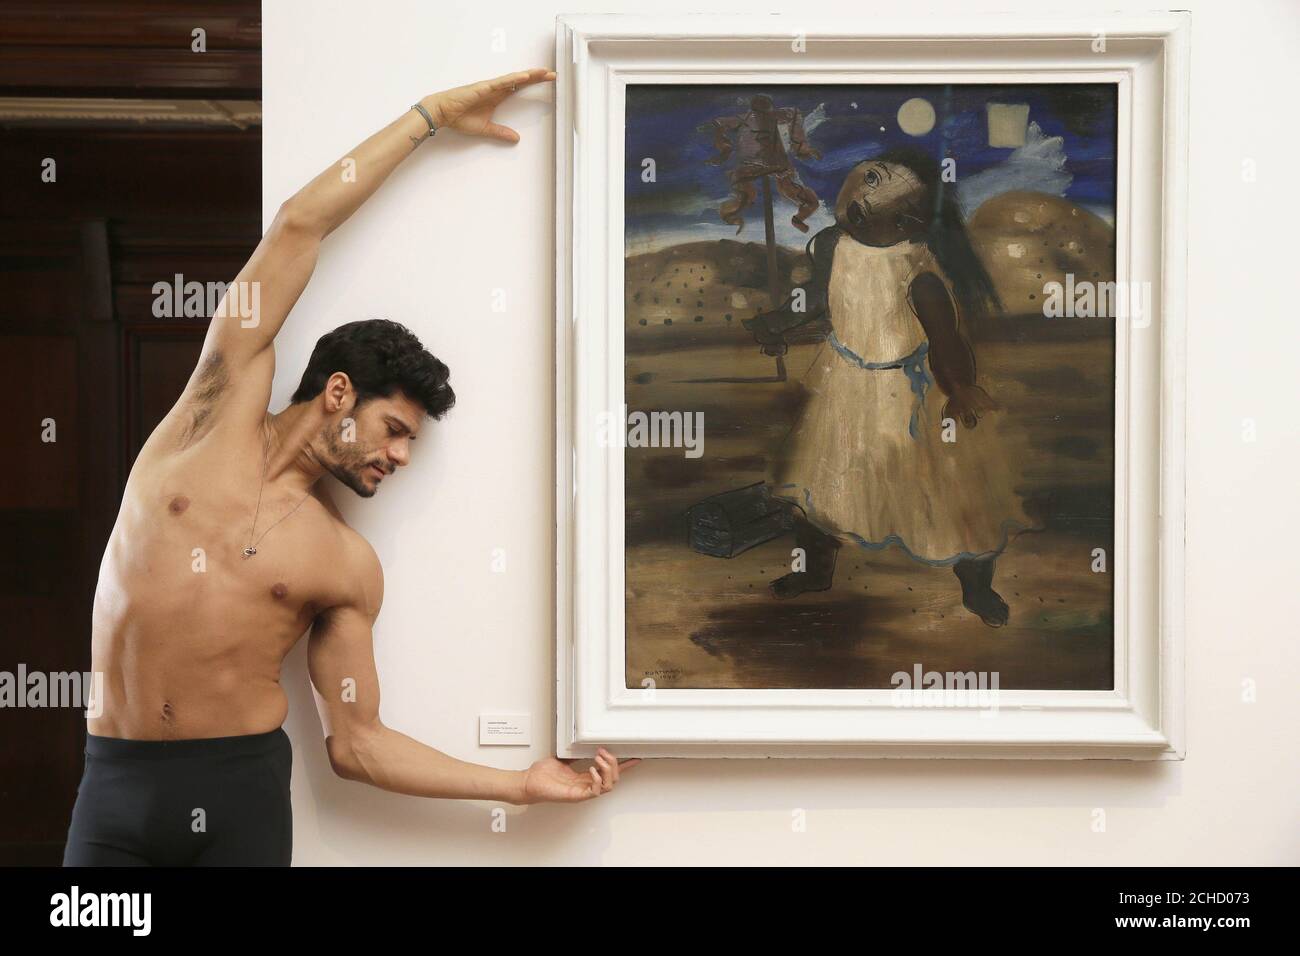 REDAKTIONELLE VERWENDUNG NUR Royal Ballet's brasilianische Principal Dancer Thiago Soares sieht die Kunst der Diplomatie: Brasilianische Moderne Painted for war, im Sala Brasil Arts Centre, in der Botschaft von Brasilien in London. Stockfoto